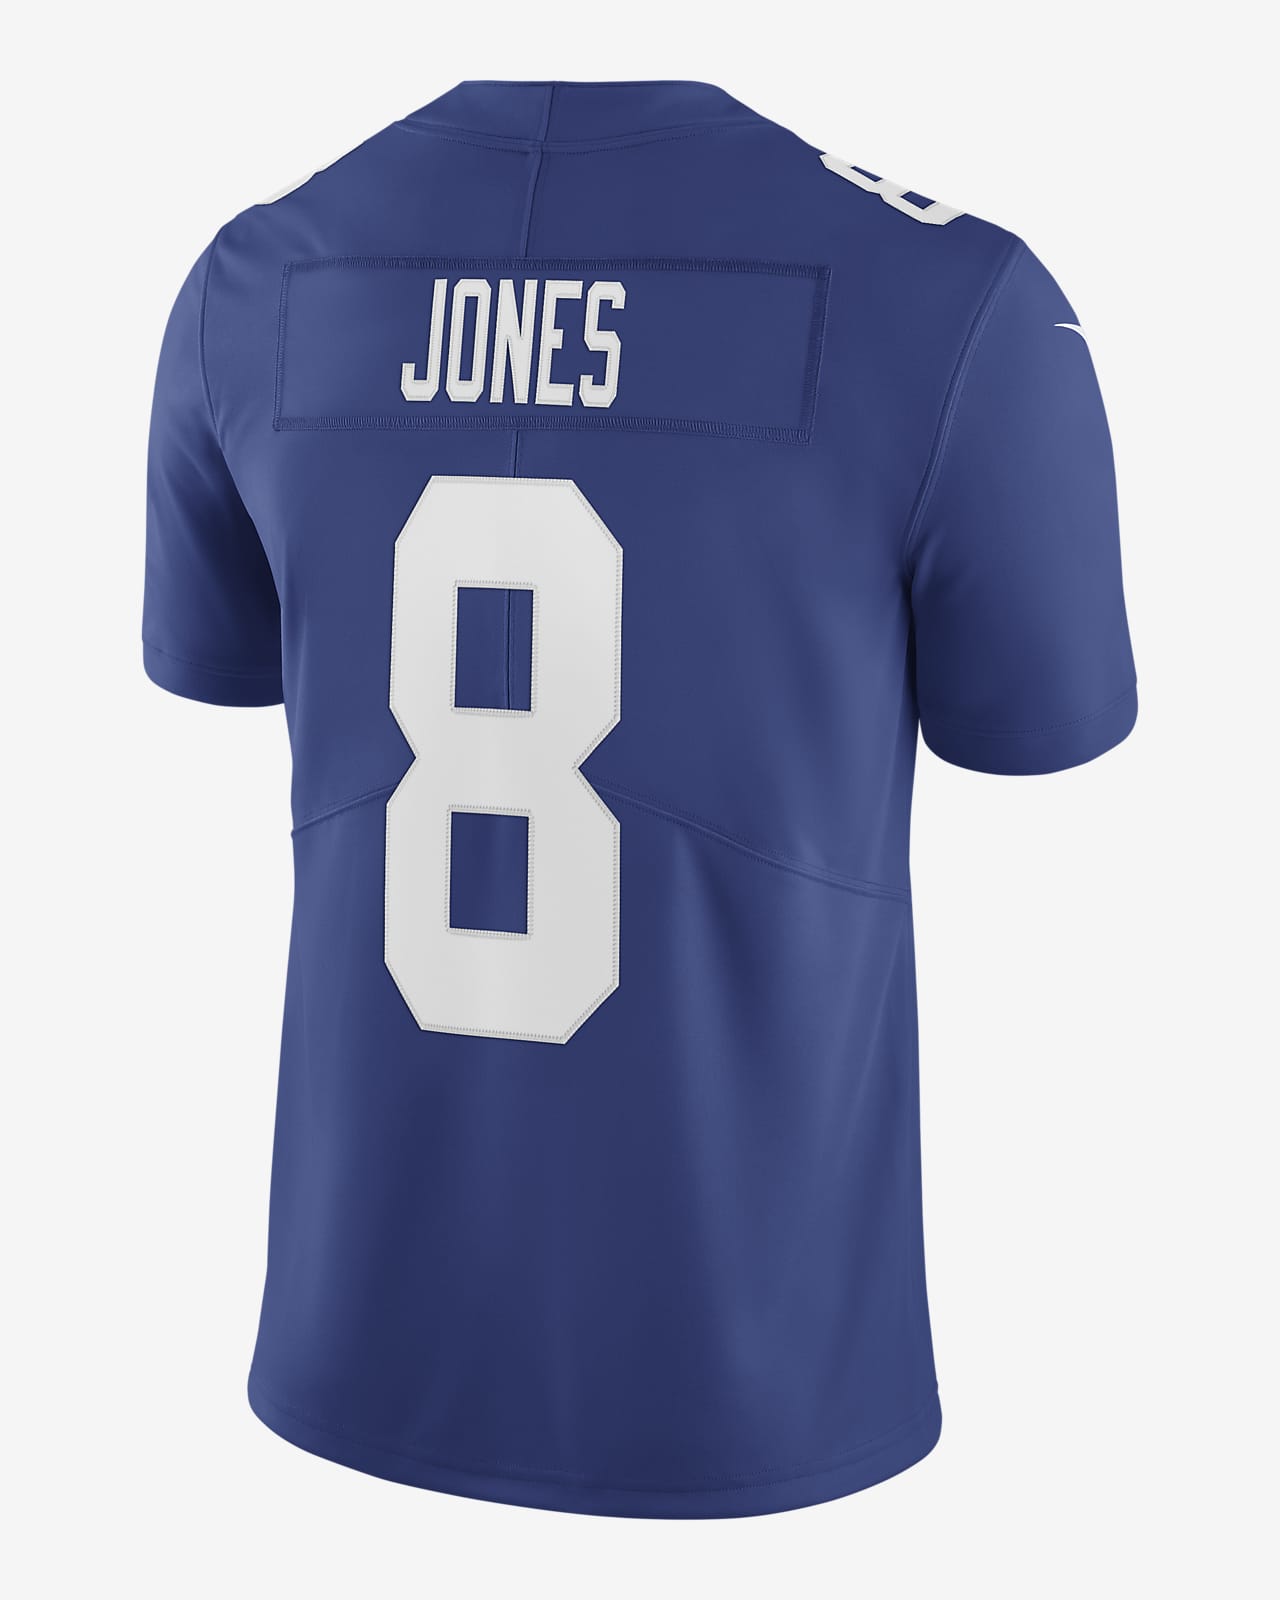 NFL New York Giants Vapor Untouchable (Daniel Jones) Men's Limited Football Jersey